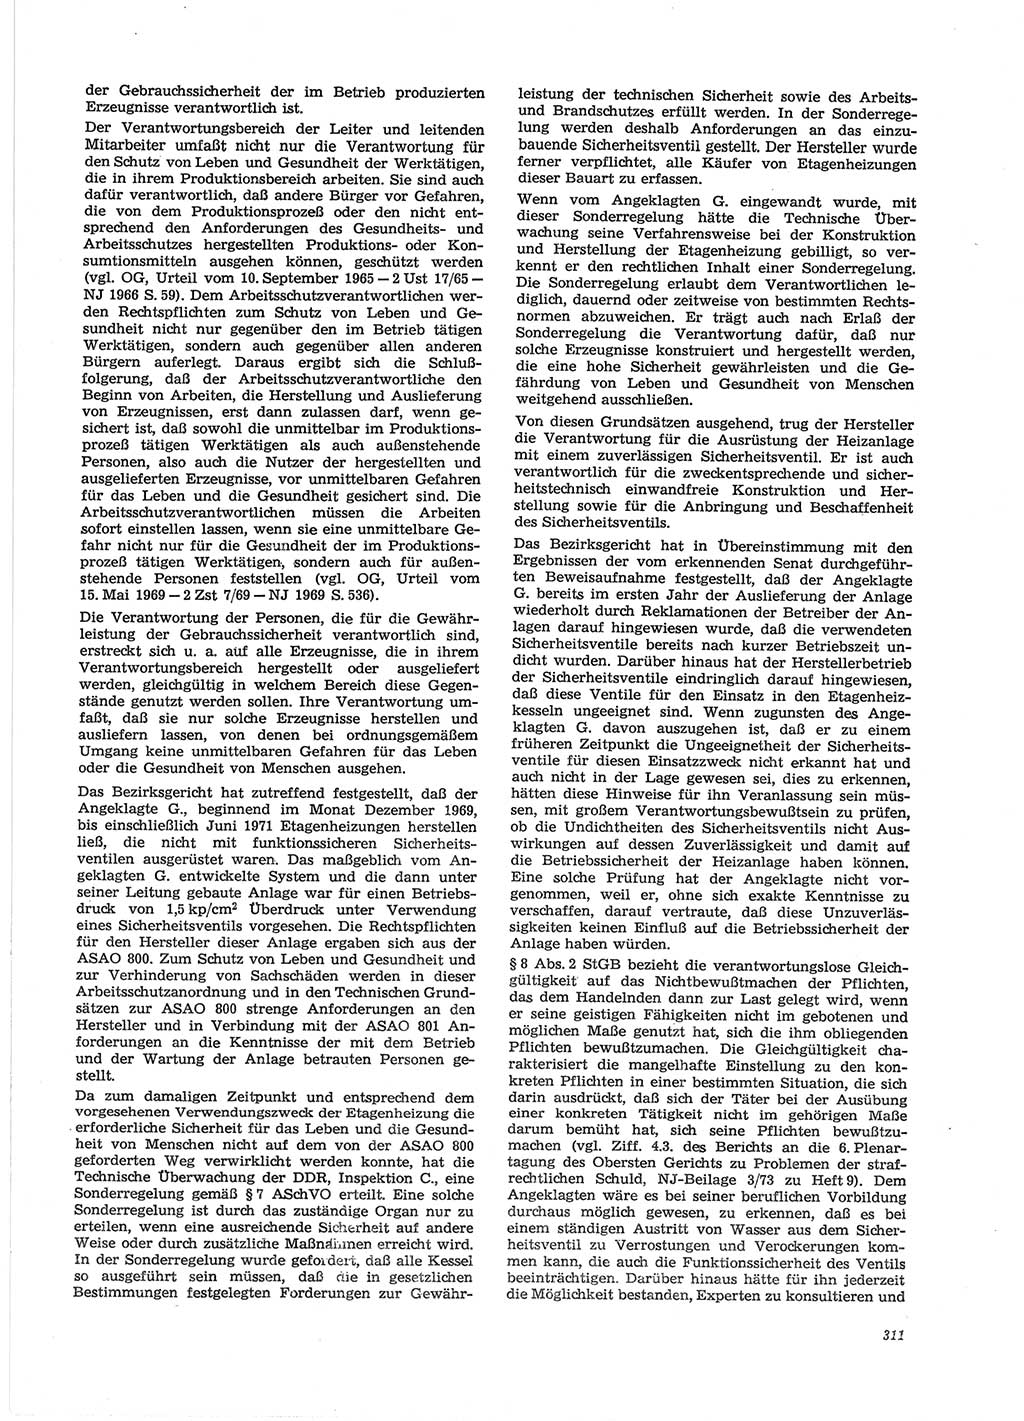 Neue Justiz (NJ), Zeitschrift für Recht und Rechtswissenschaft [Deutsche Demokratische Republik (DDR)], 28. Jahrgang 1974, Seite 311 (NJ DDR 1974, S. 311)